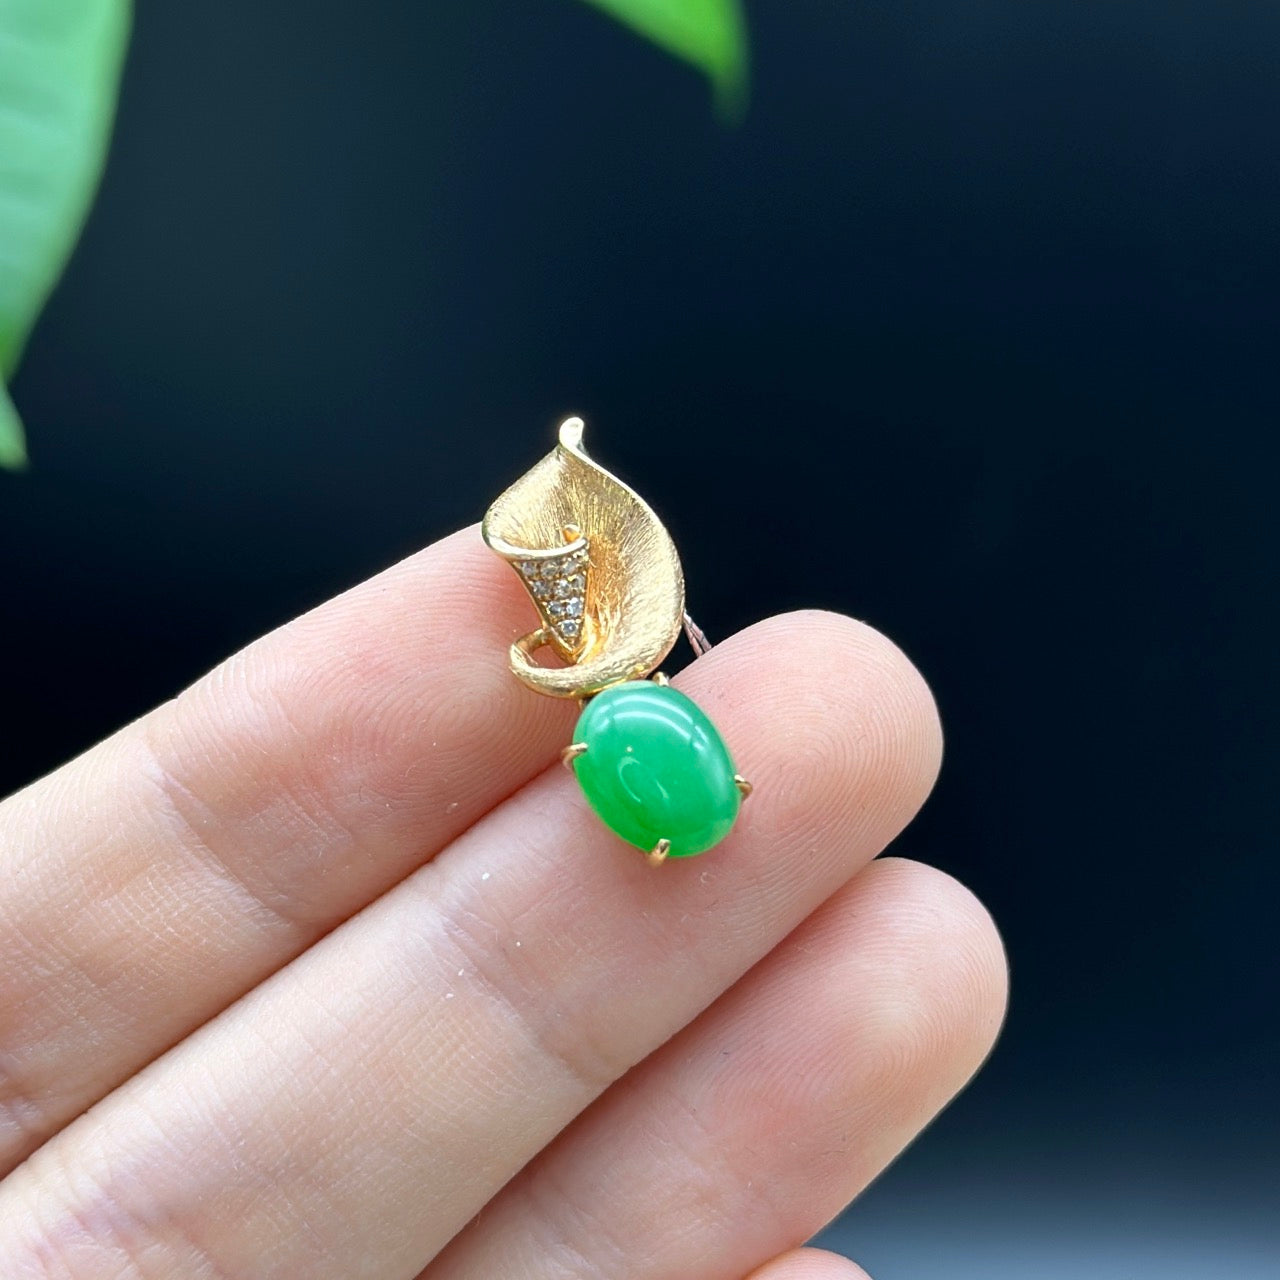 18K Yellow Gold "Morning Glory" Genuine Jadeite Jade Pendant with Diamonds